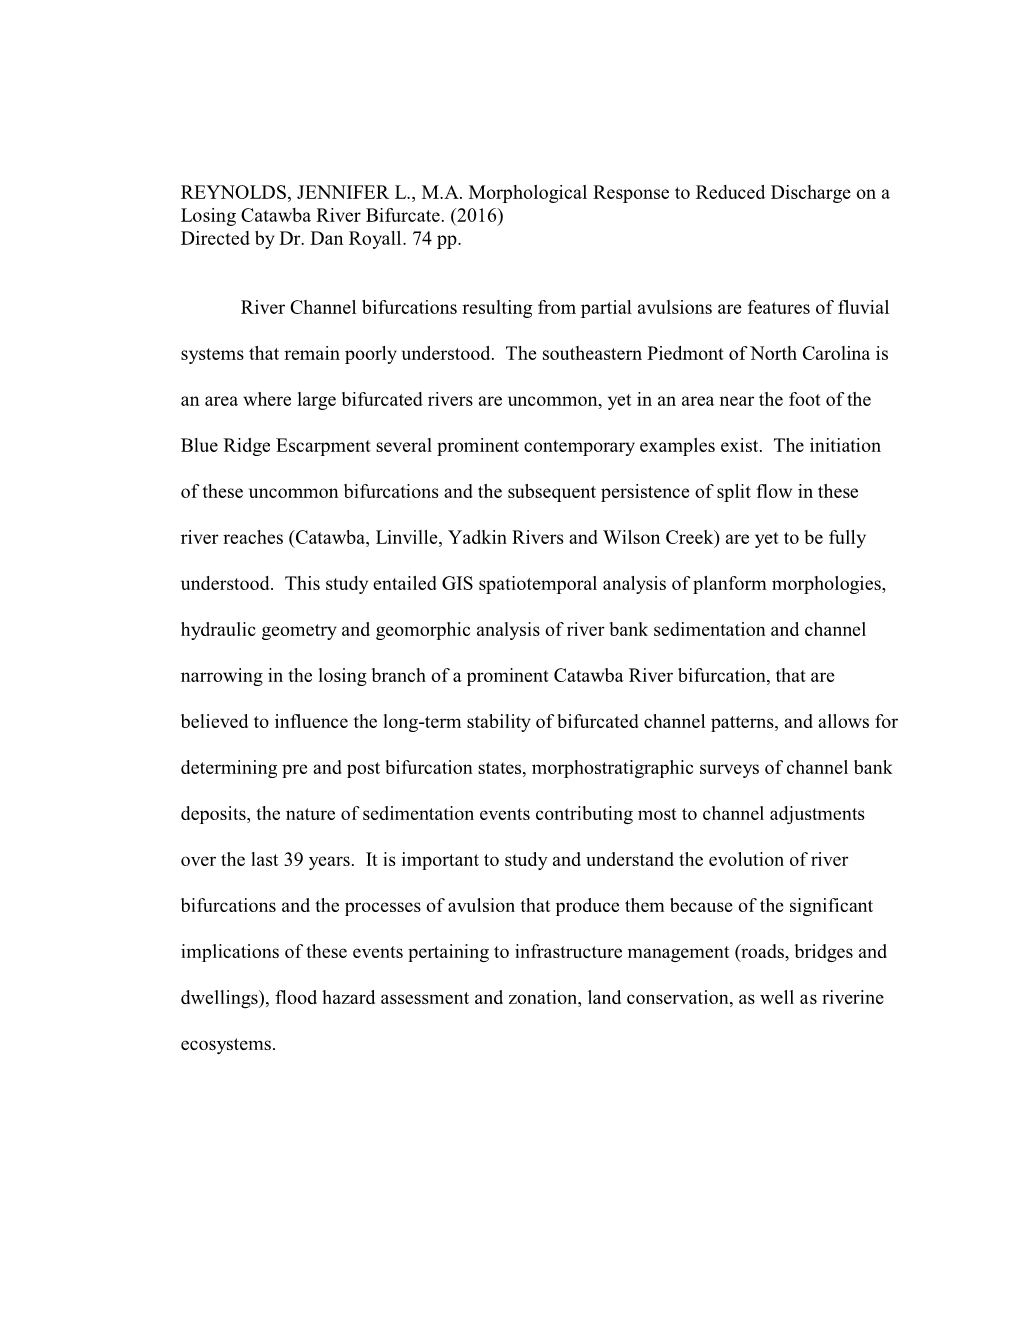 REYNOLDS, JENNIFER L., MA Morphological Response To